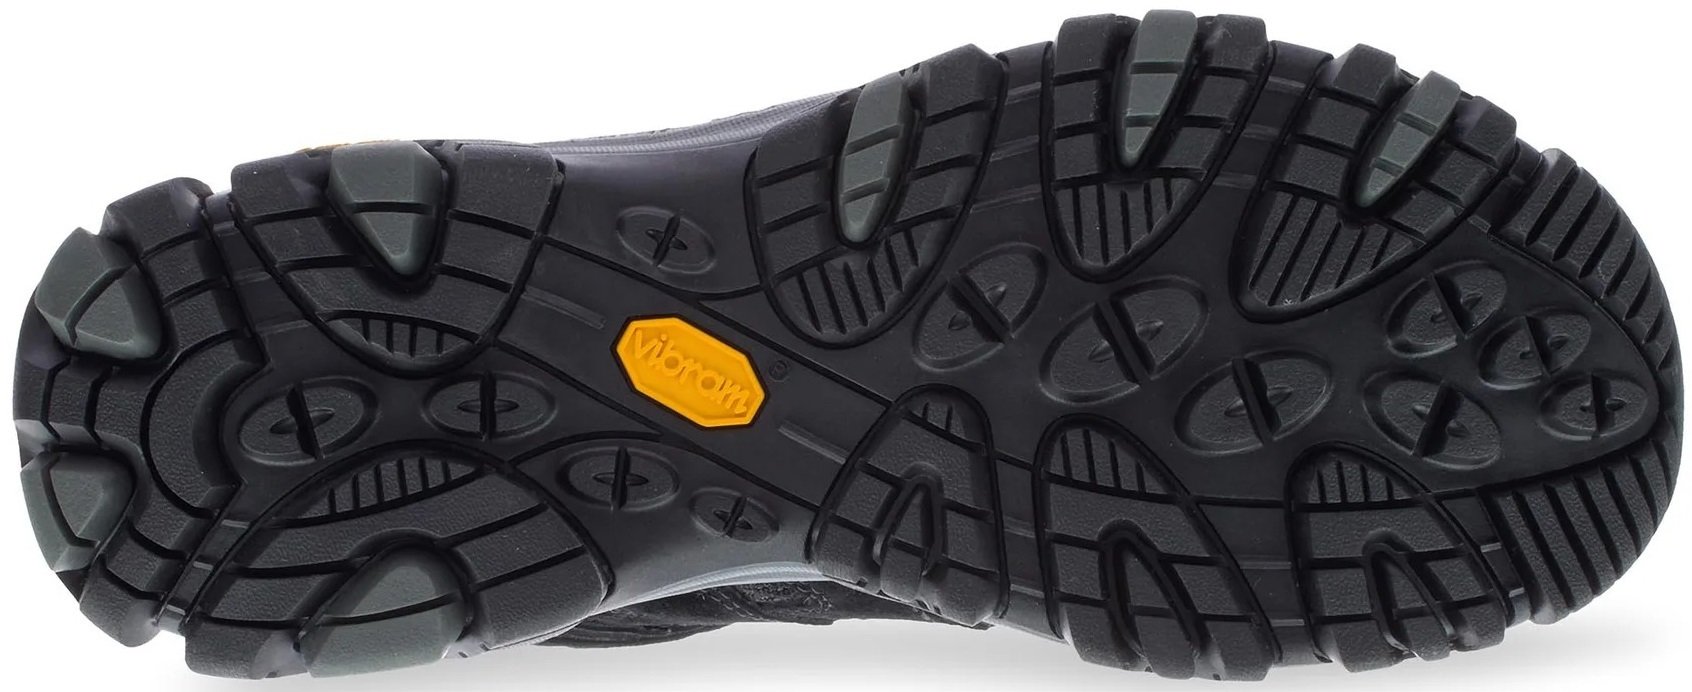 Ботинки мужские Merrell Moab 3 MID GTX black/grey 43 черный фото 4